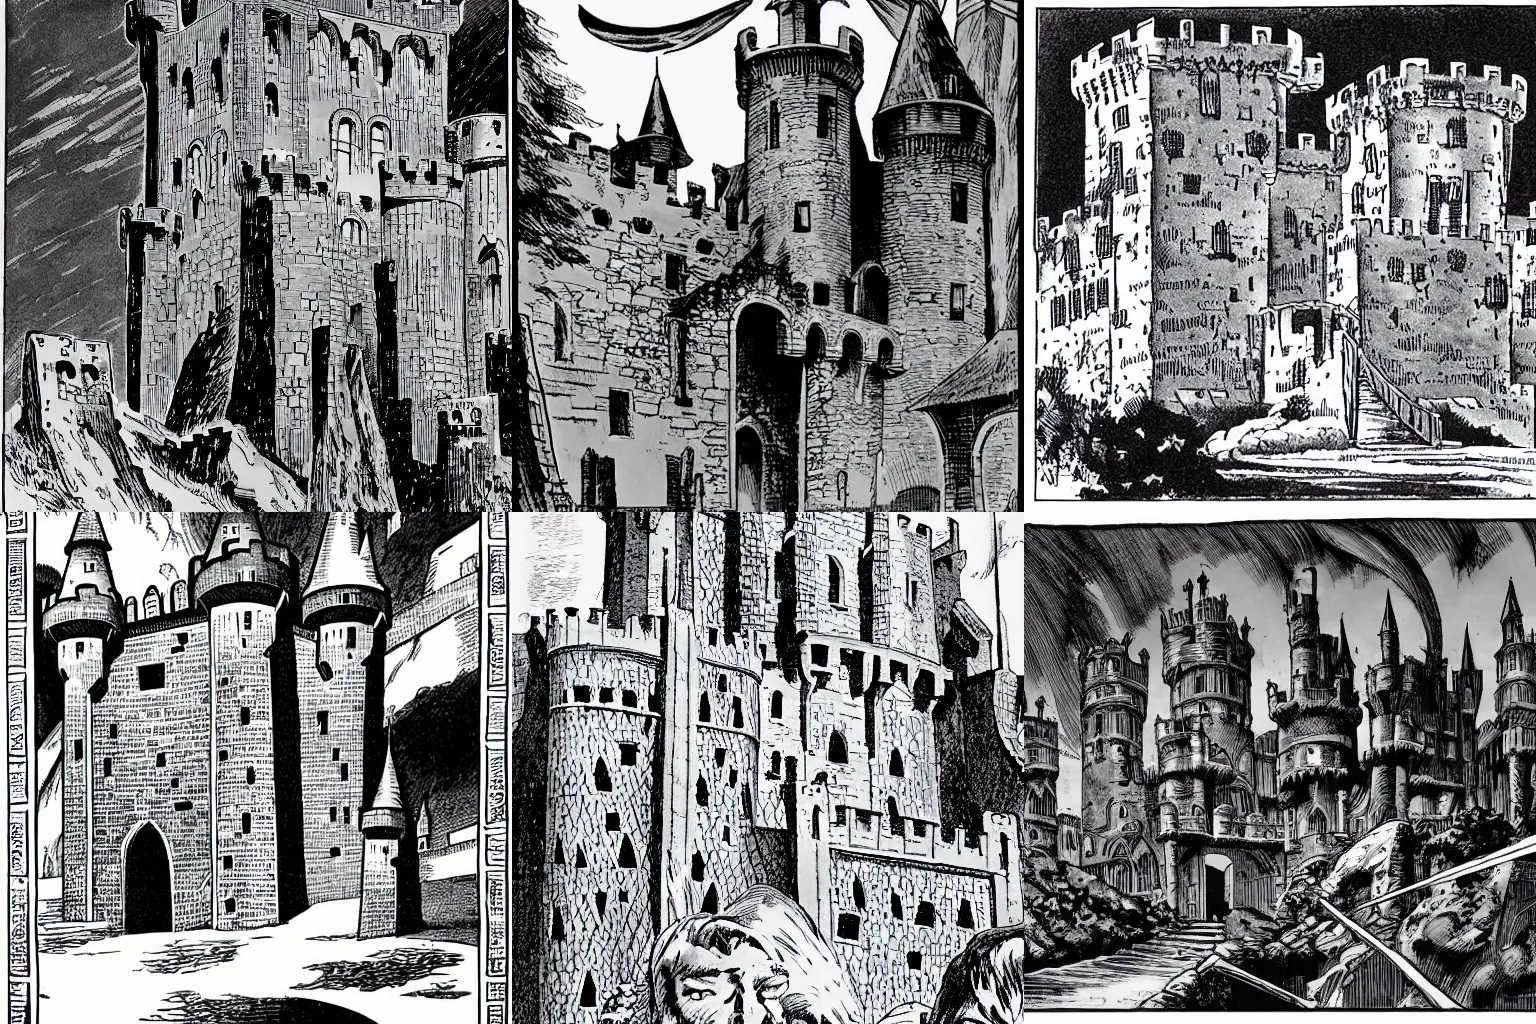 Prompt: medieval castle, by Joe Kubert